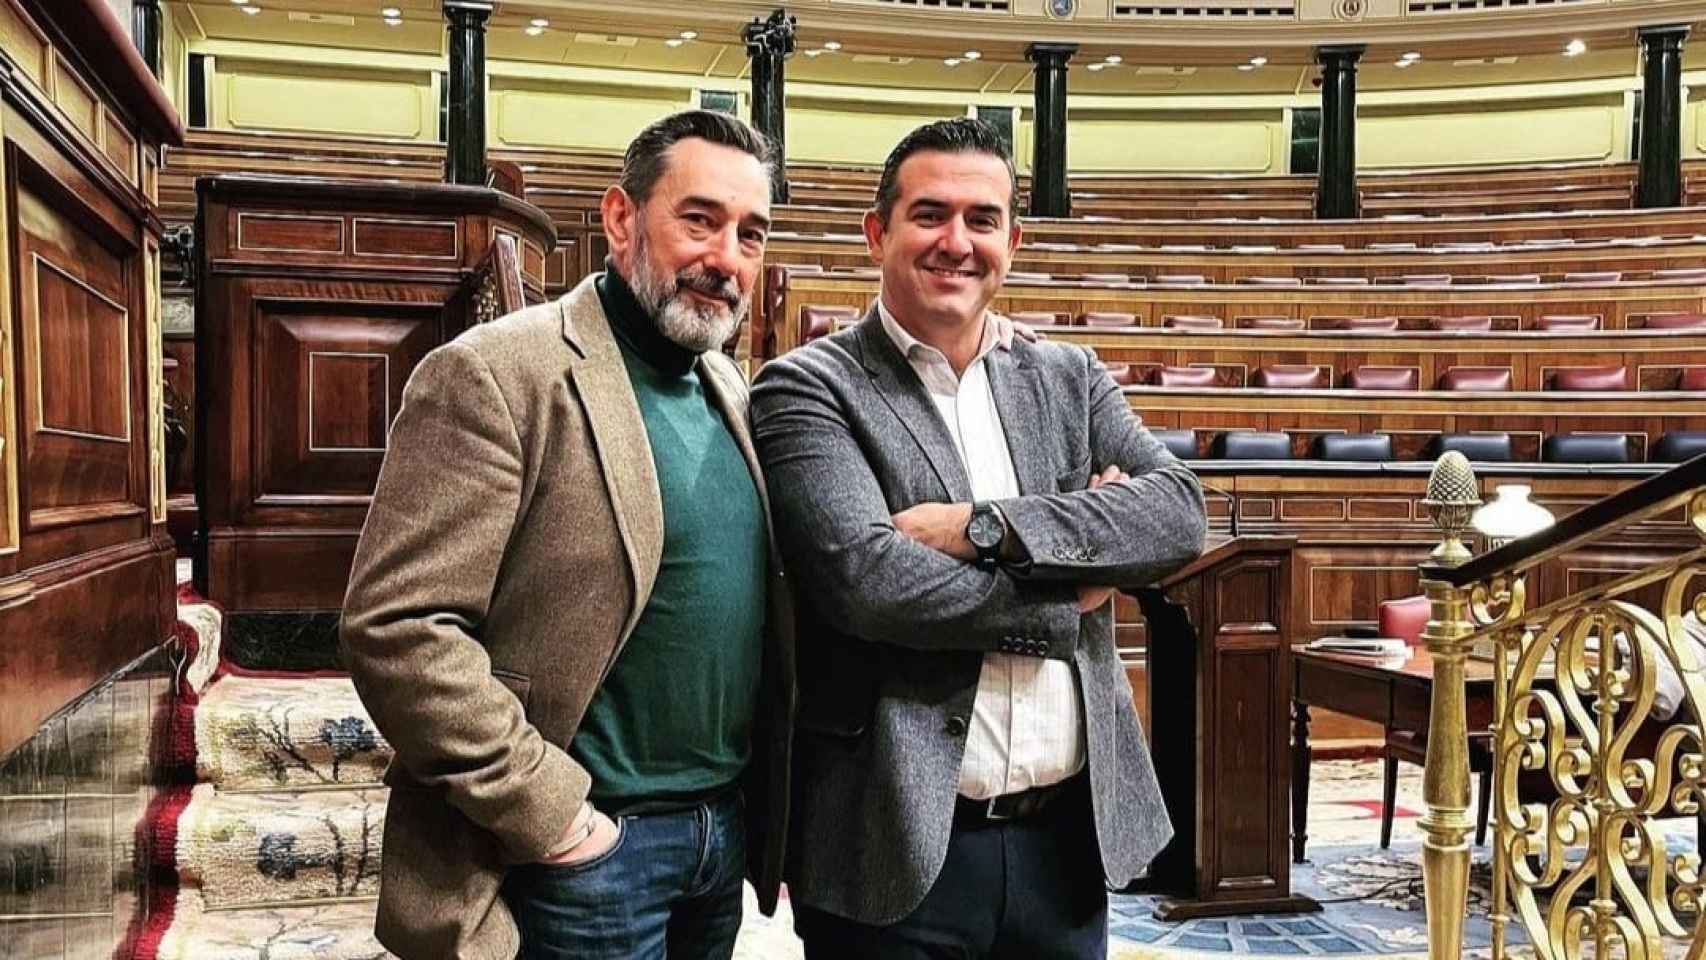 A la izquierda, Enrique Quesada, candidato a la Alcaldía en Seseña. A la derecha, José Luis Sosa, candidato a la Alcaldía en Illescas.